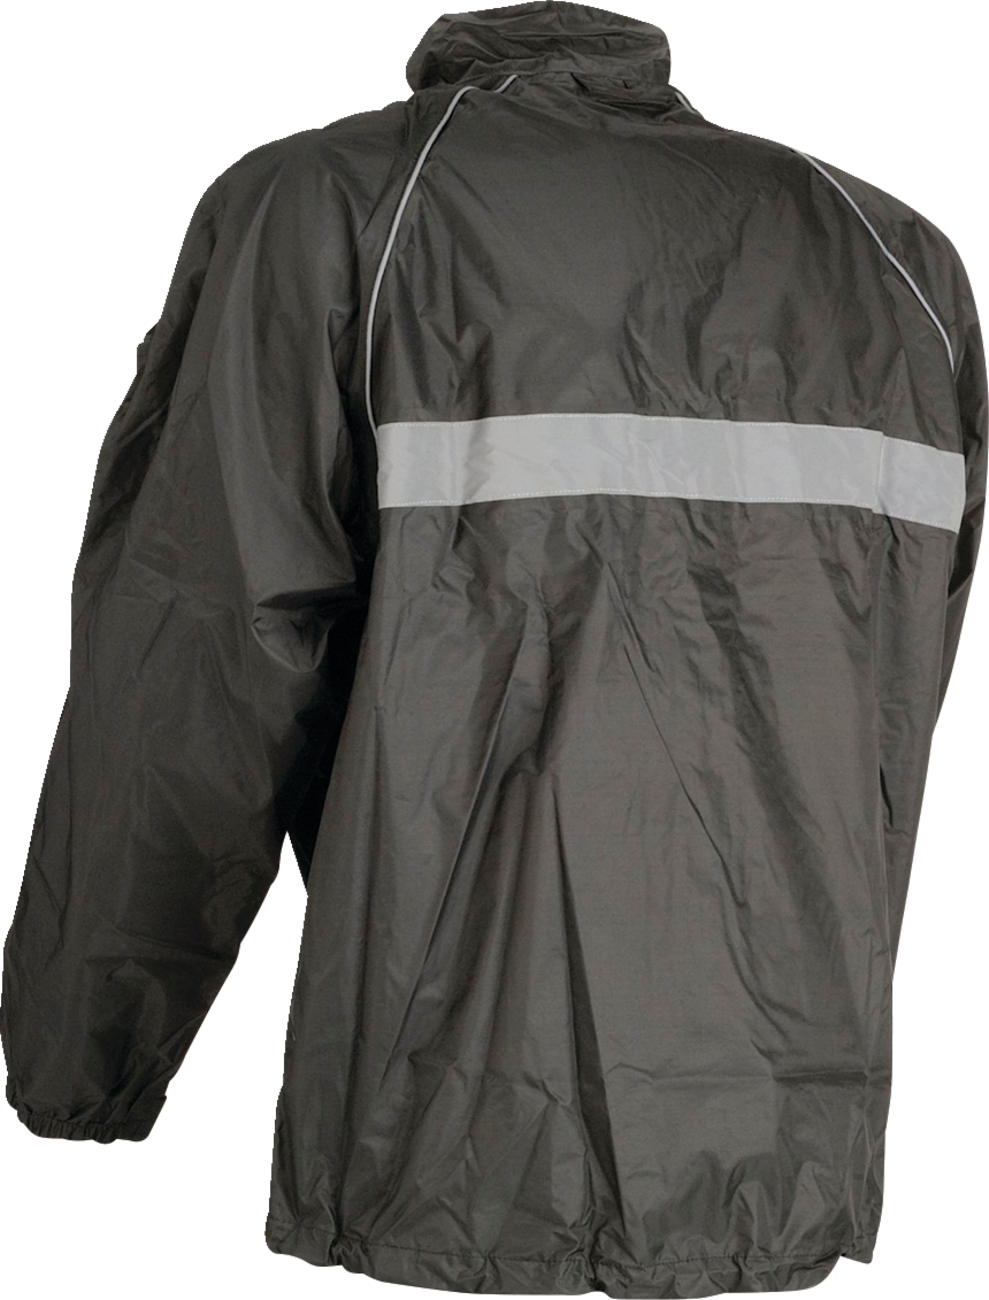 Z1R Waterproof Jacket - Black - Small 2854-0332